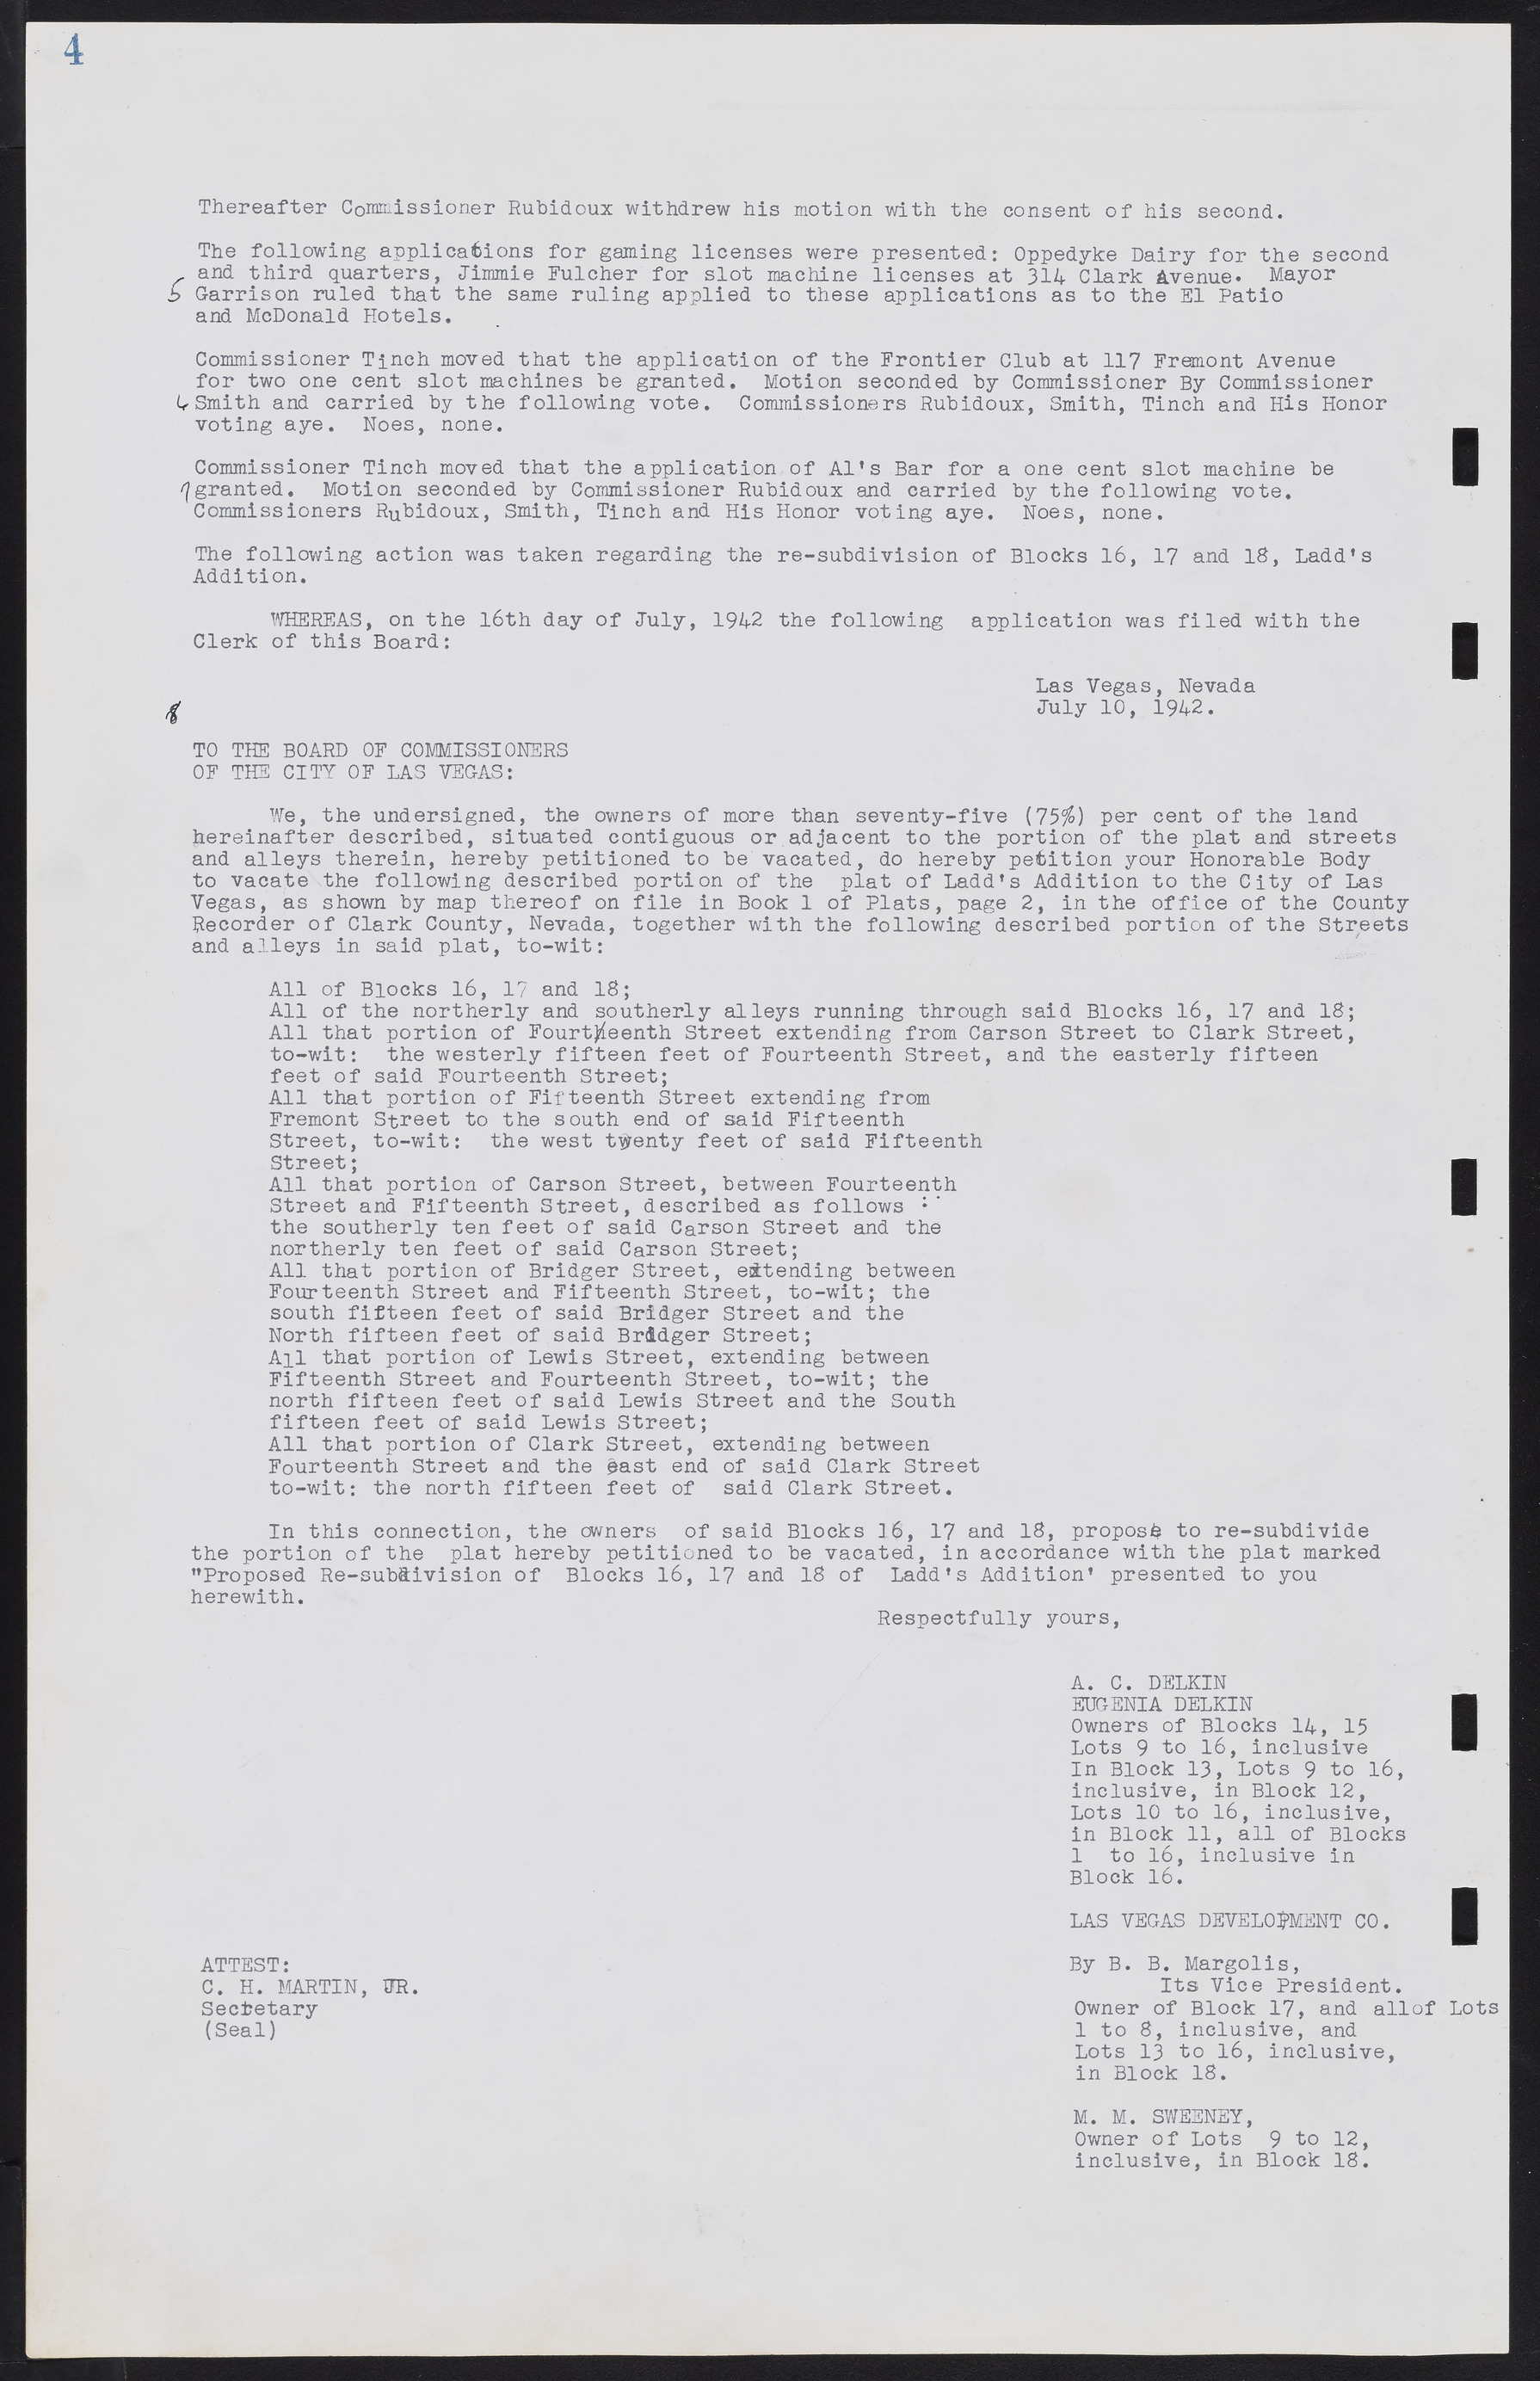 Las Vegas City Commission Minutes, August 11, 1942 to December 30, 1946, lvc000005-12